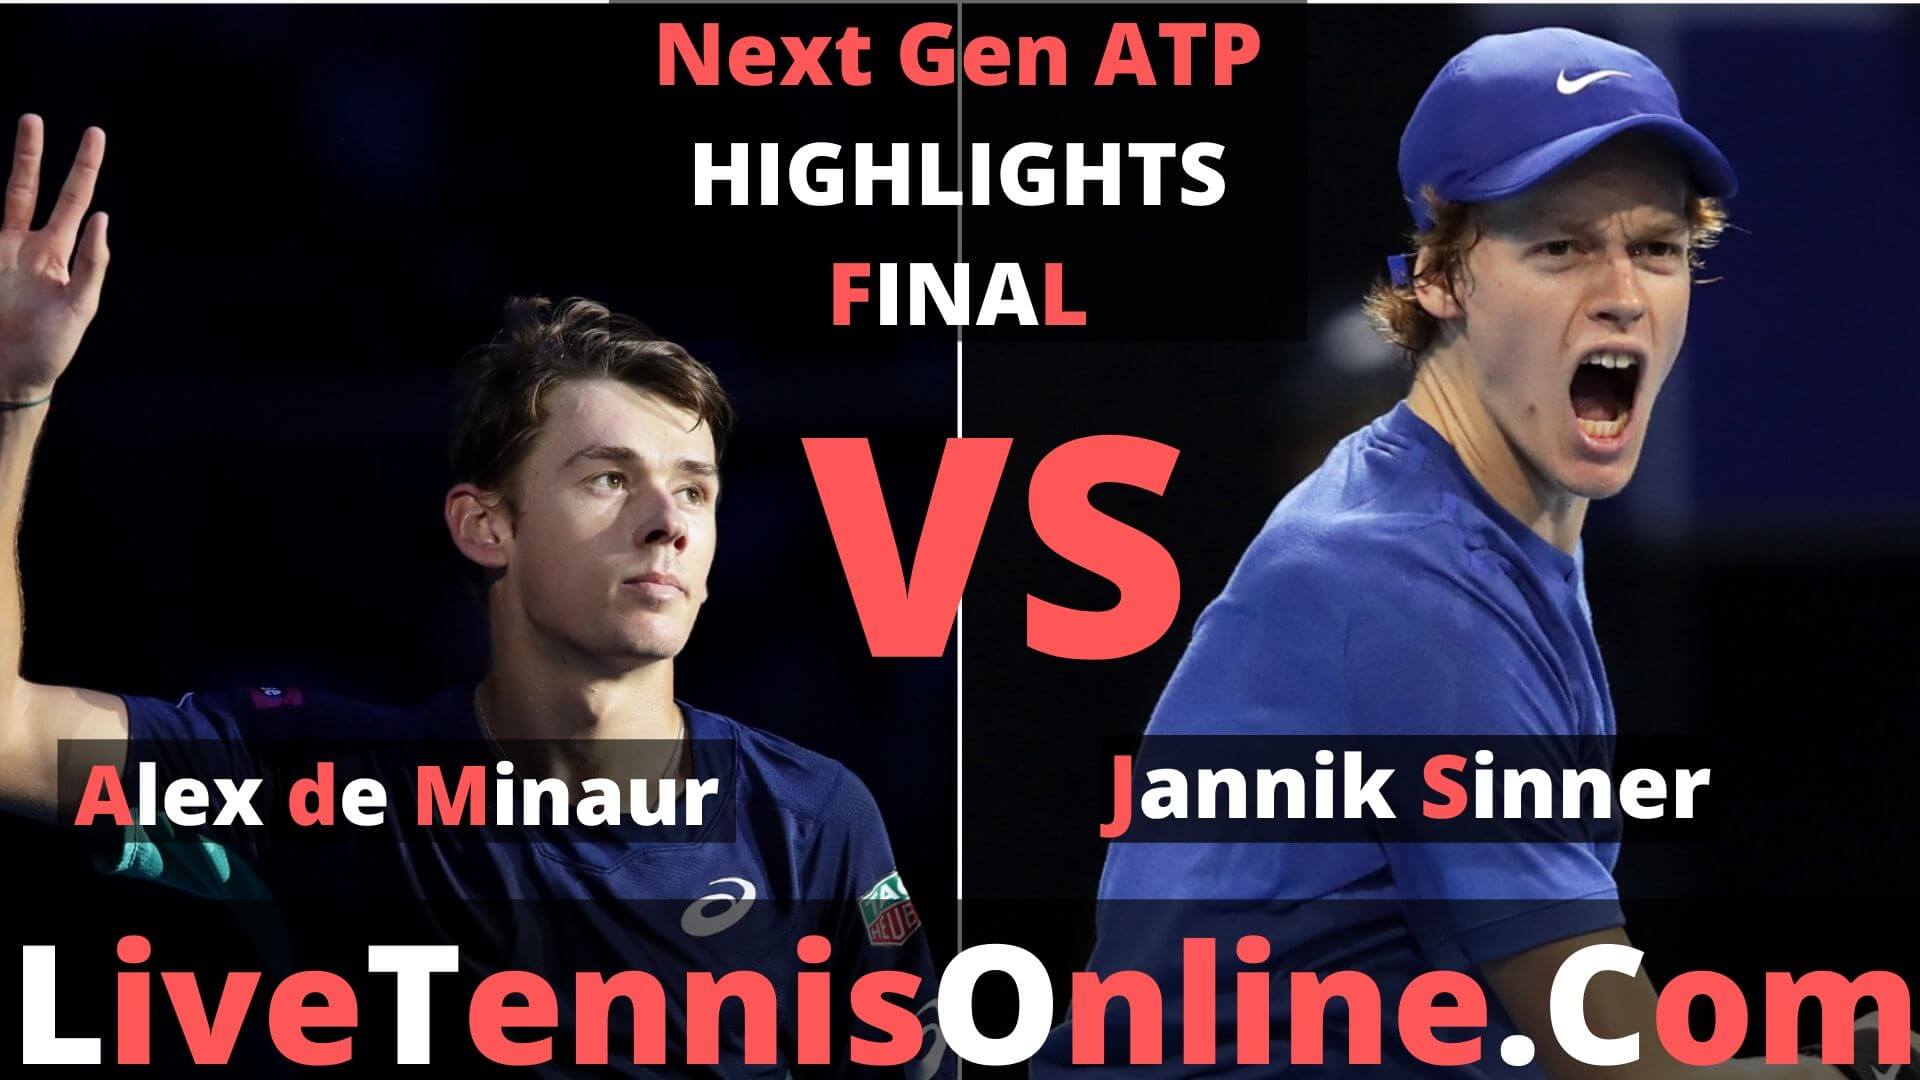 Alex de Minaur Vs Jannik Sinner Highlights 2019 Next Gen ATP Final